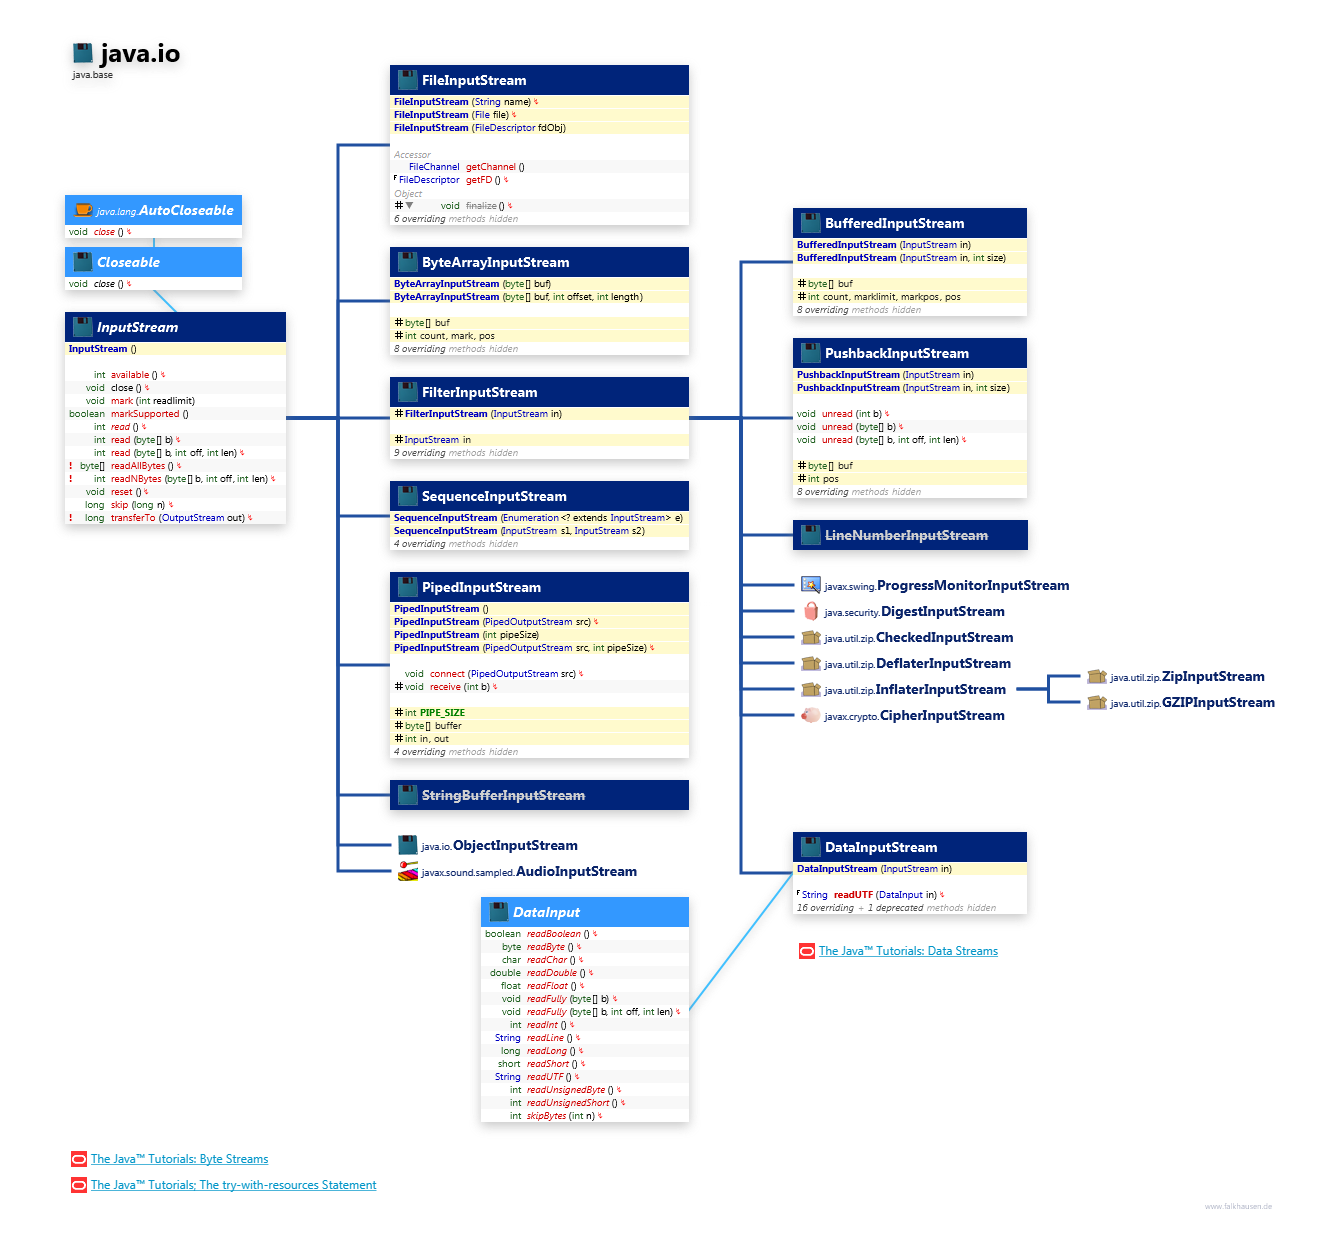 java.io InputStream class diagram and api documentation for Java 10